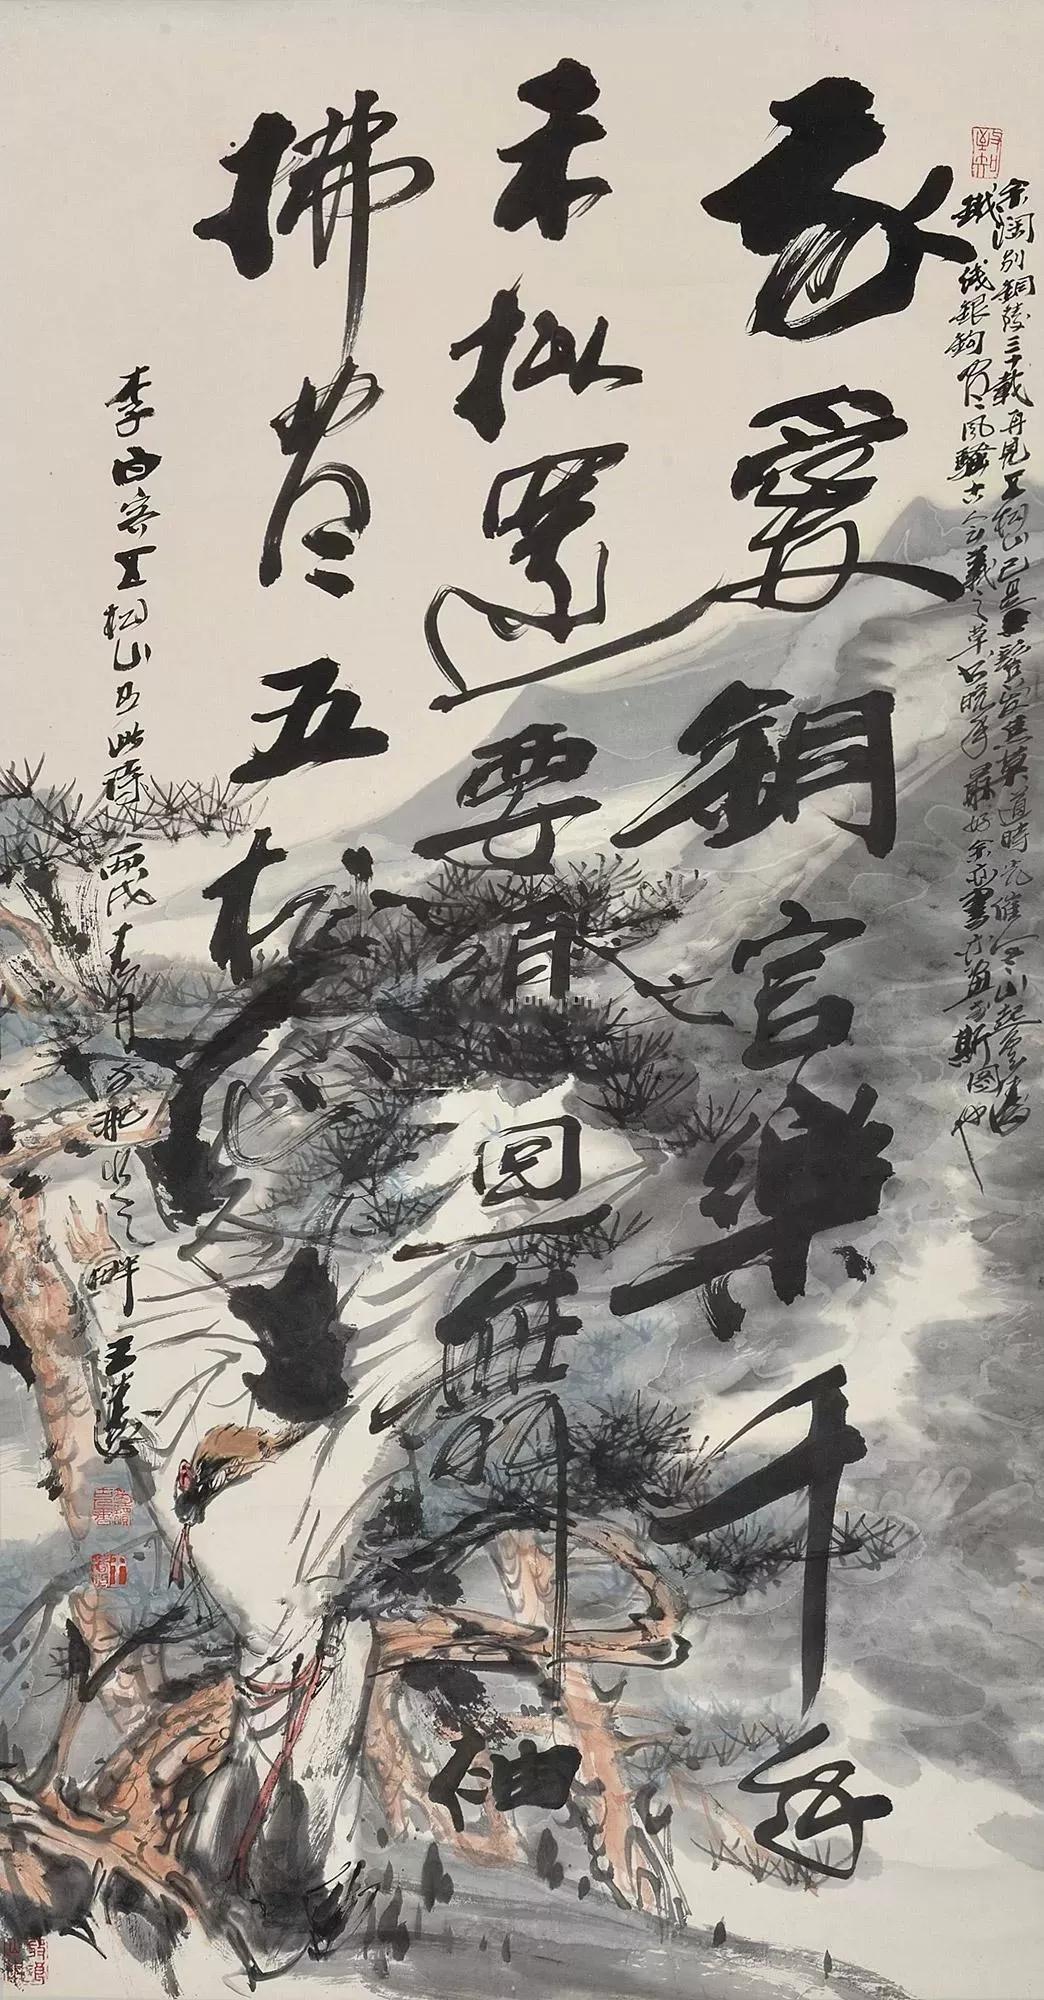 第1340期:王涛——2018年最高成交价前10幅作品,中国画家拍卖成交指数